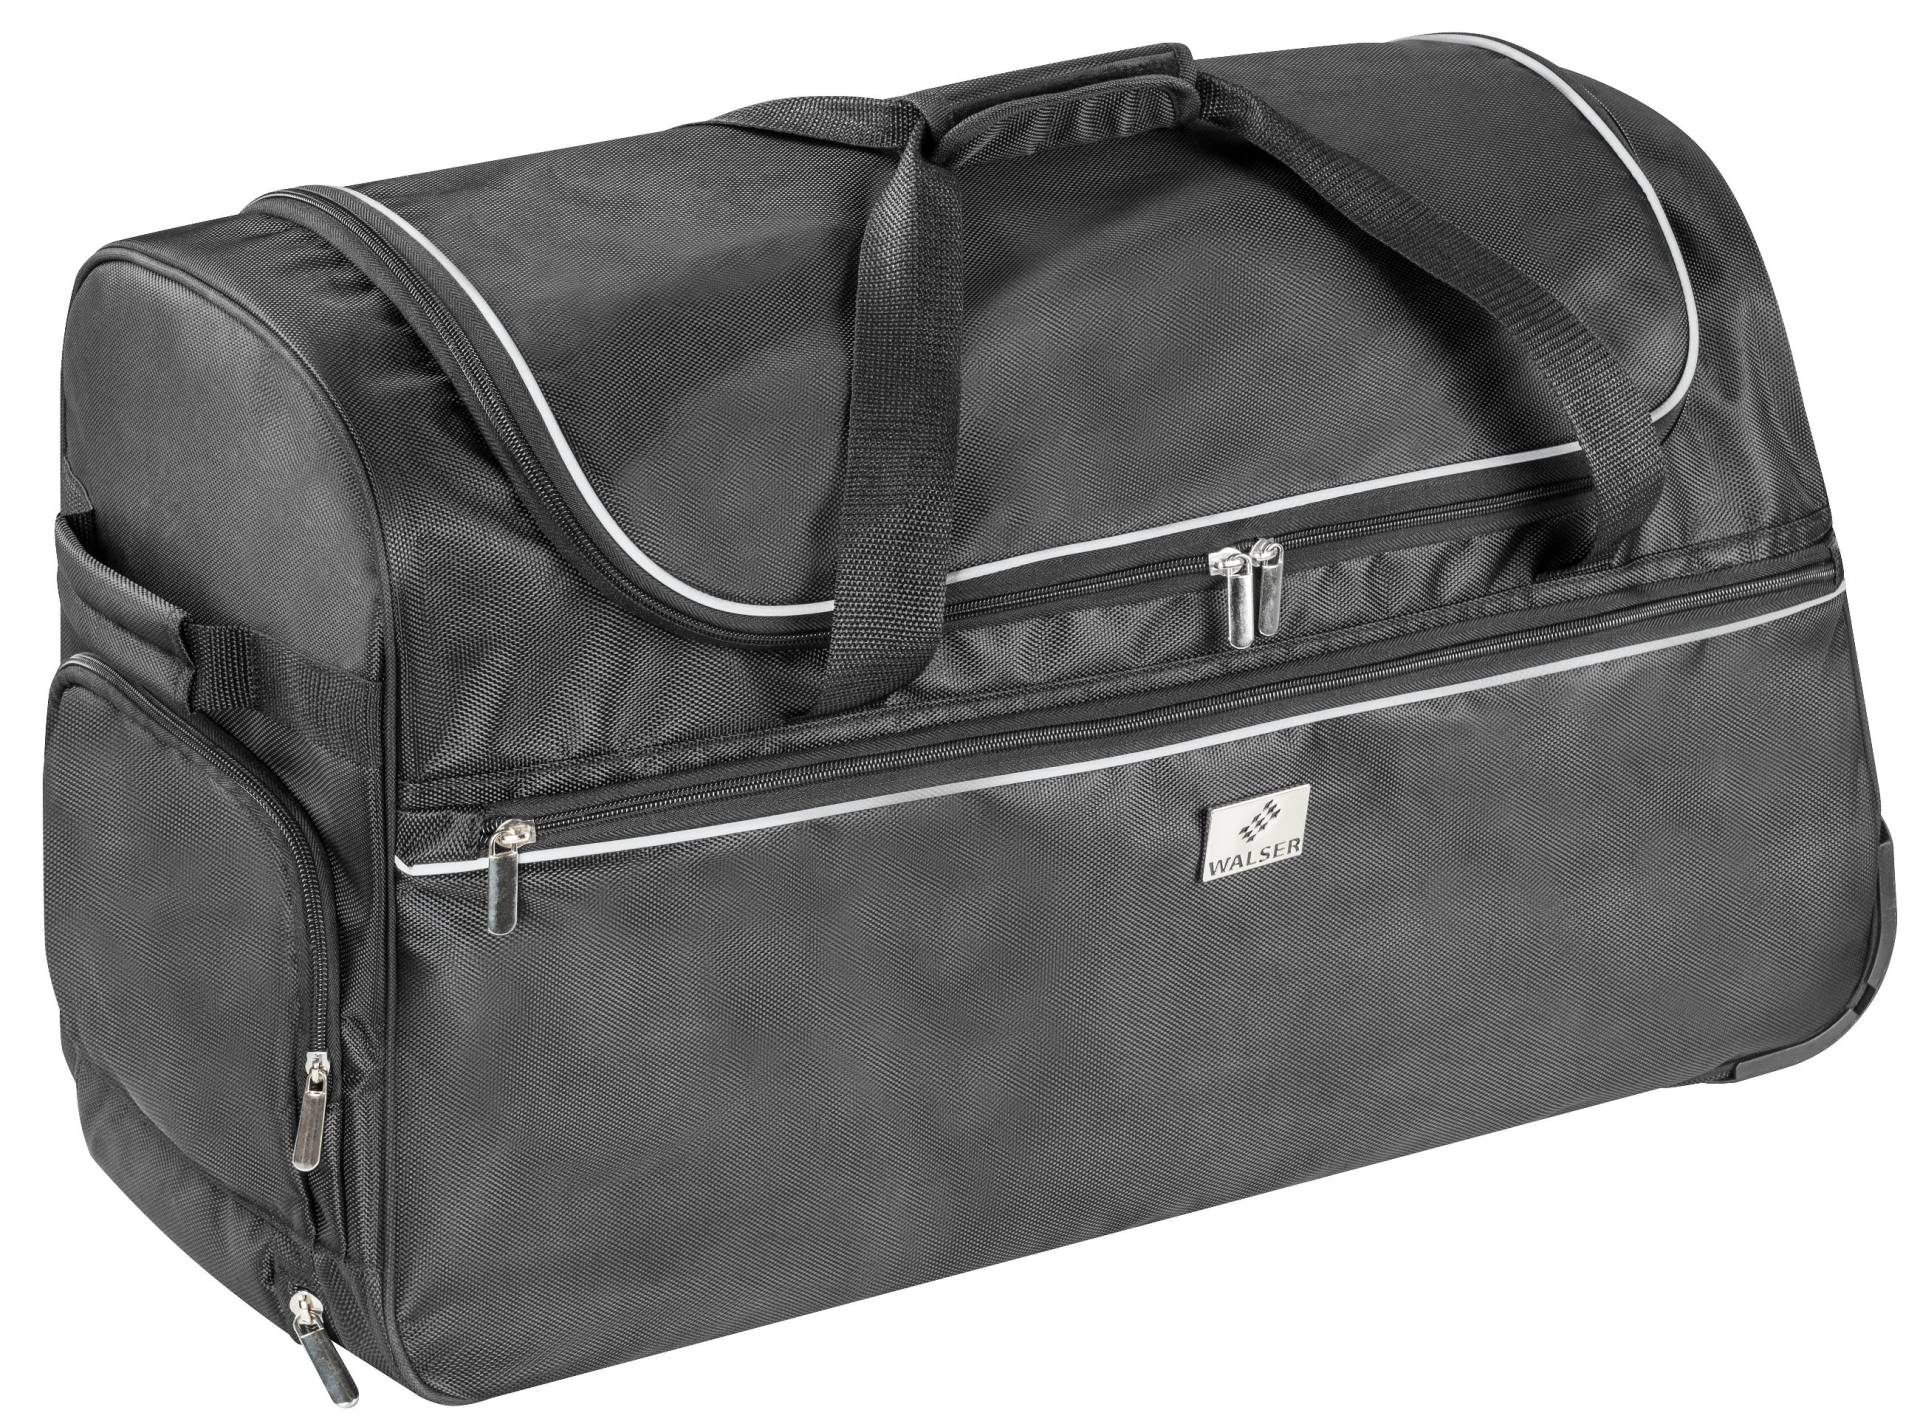 Carbags Trolley Bag, Reisetasche, Reisetrolley 115L - 70x35x40 cm von WALSER